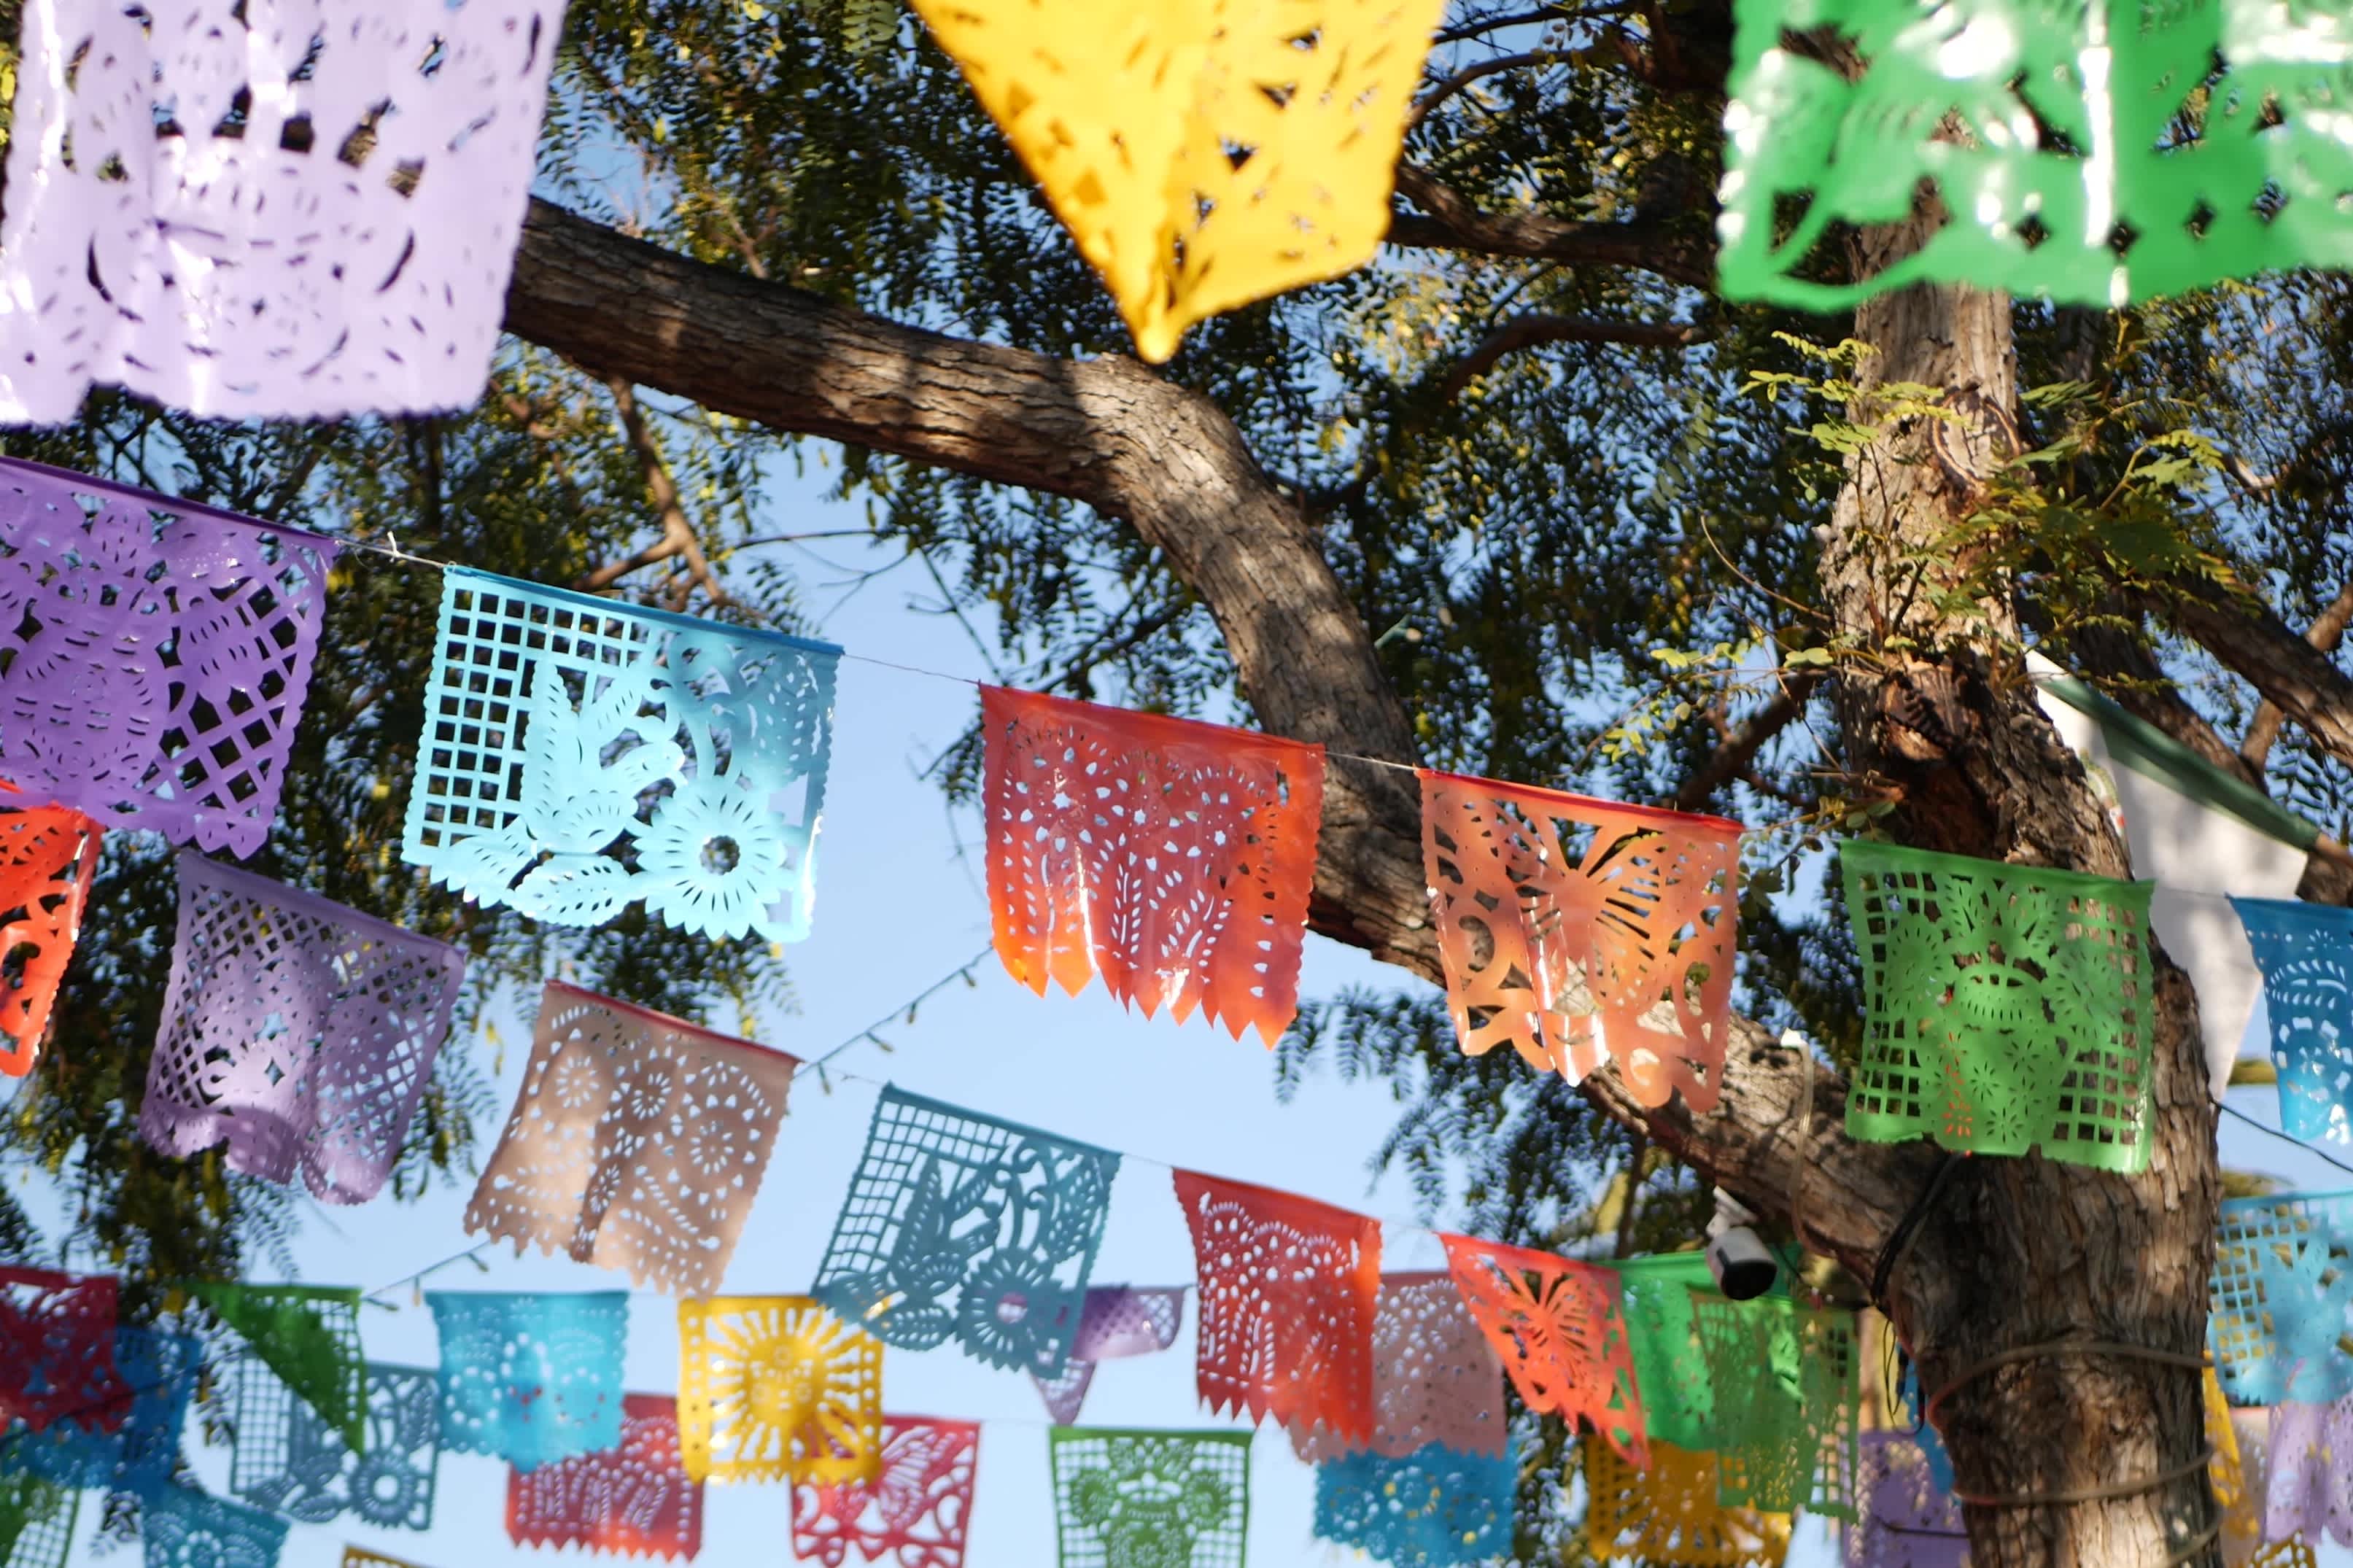 Bunte mexikanische perforierte Papel Picado Banner, Festival bunte Papiergirlande. Mehrfarbige hispanische Menschen geschnitzte Taschentuchfahnen, Feiertag oder Karneval. Authentische Fiesta-Dekoration in Lateinamerika.